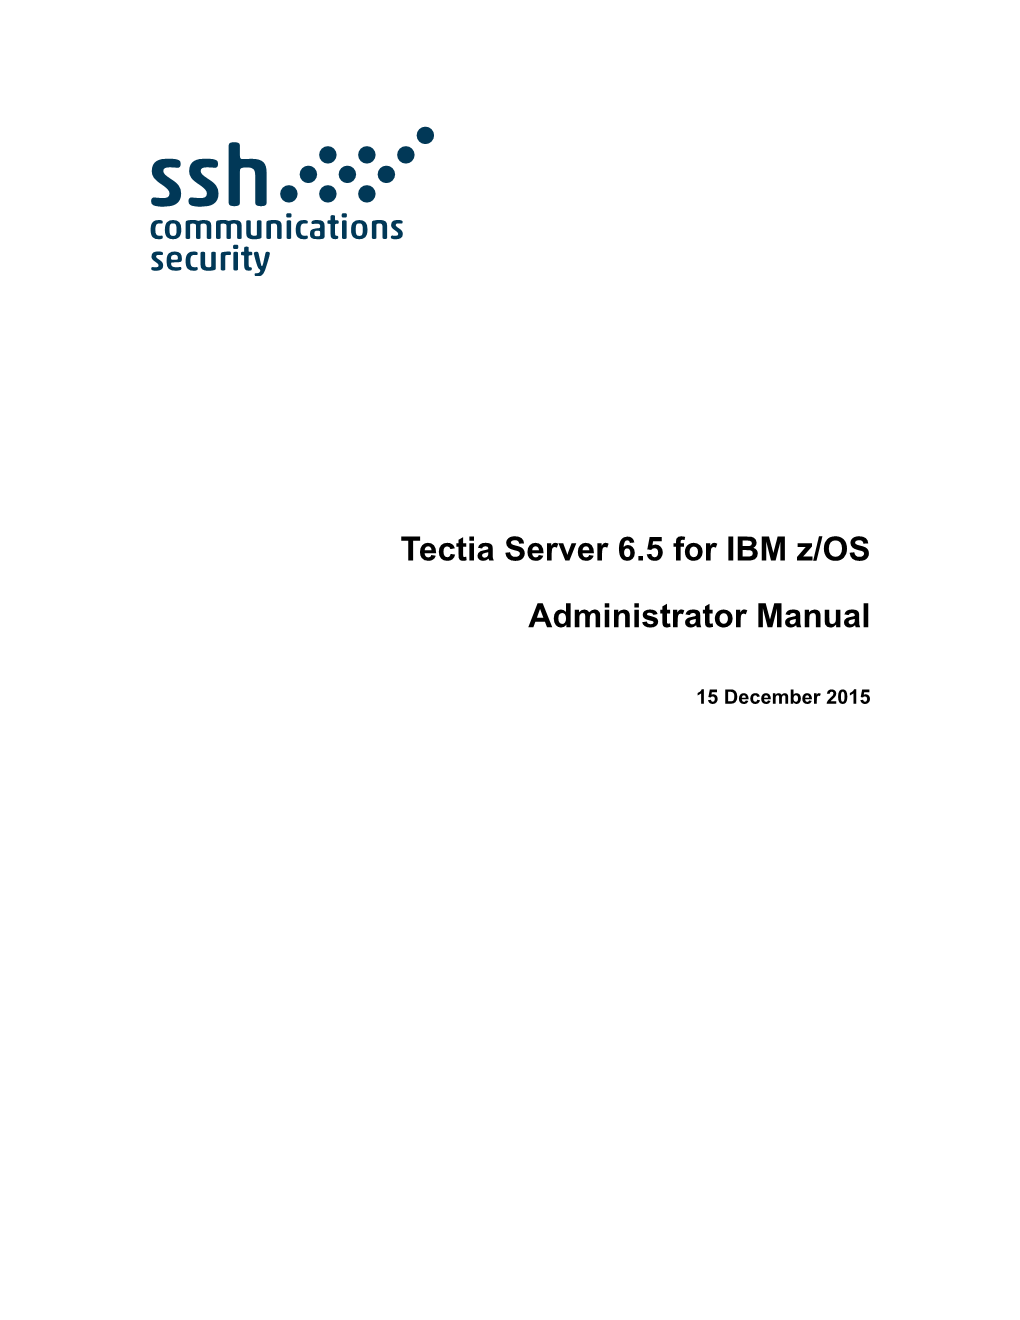 Tectia Server 6.5 for IBM Z/OS Administrator Manual